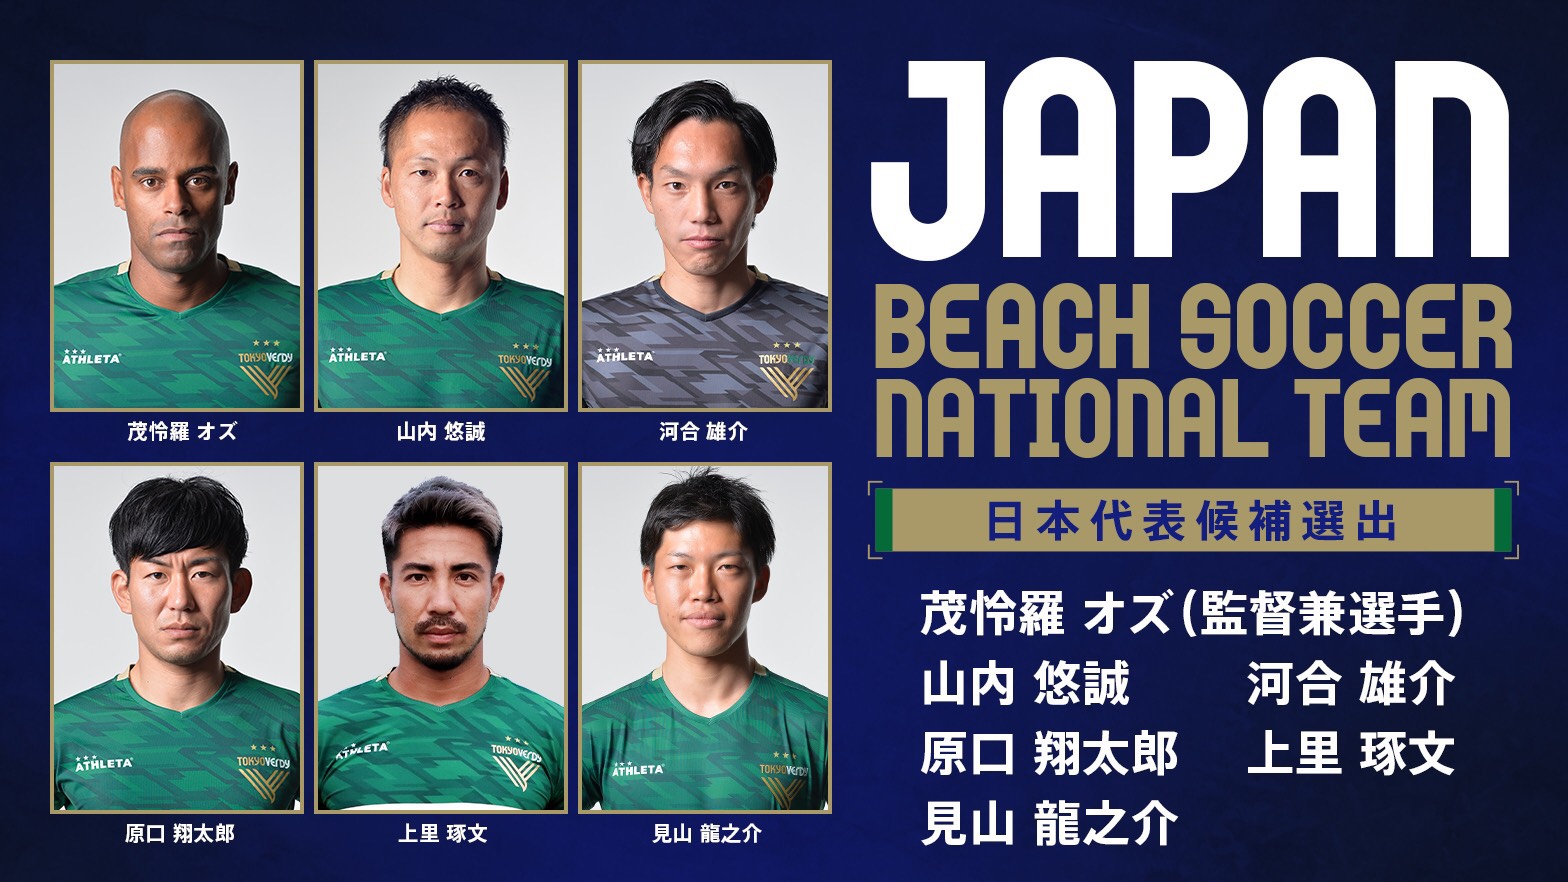 10 28 ビーチサッカー ビーチサッカー日本代表候補トレーニングメンバーに6名選出